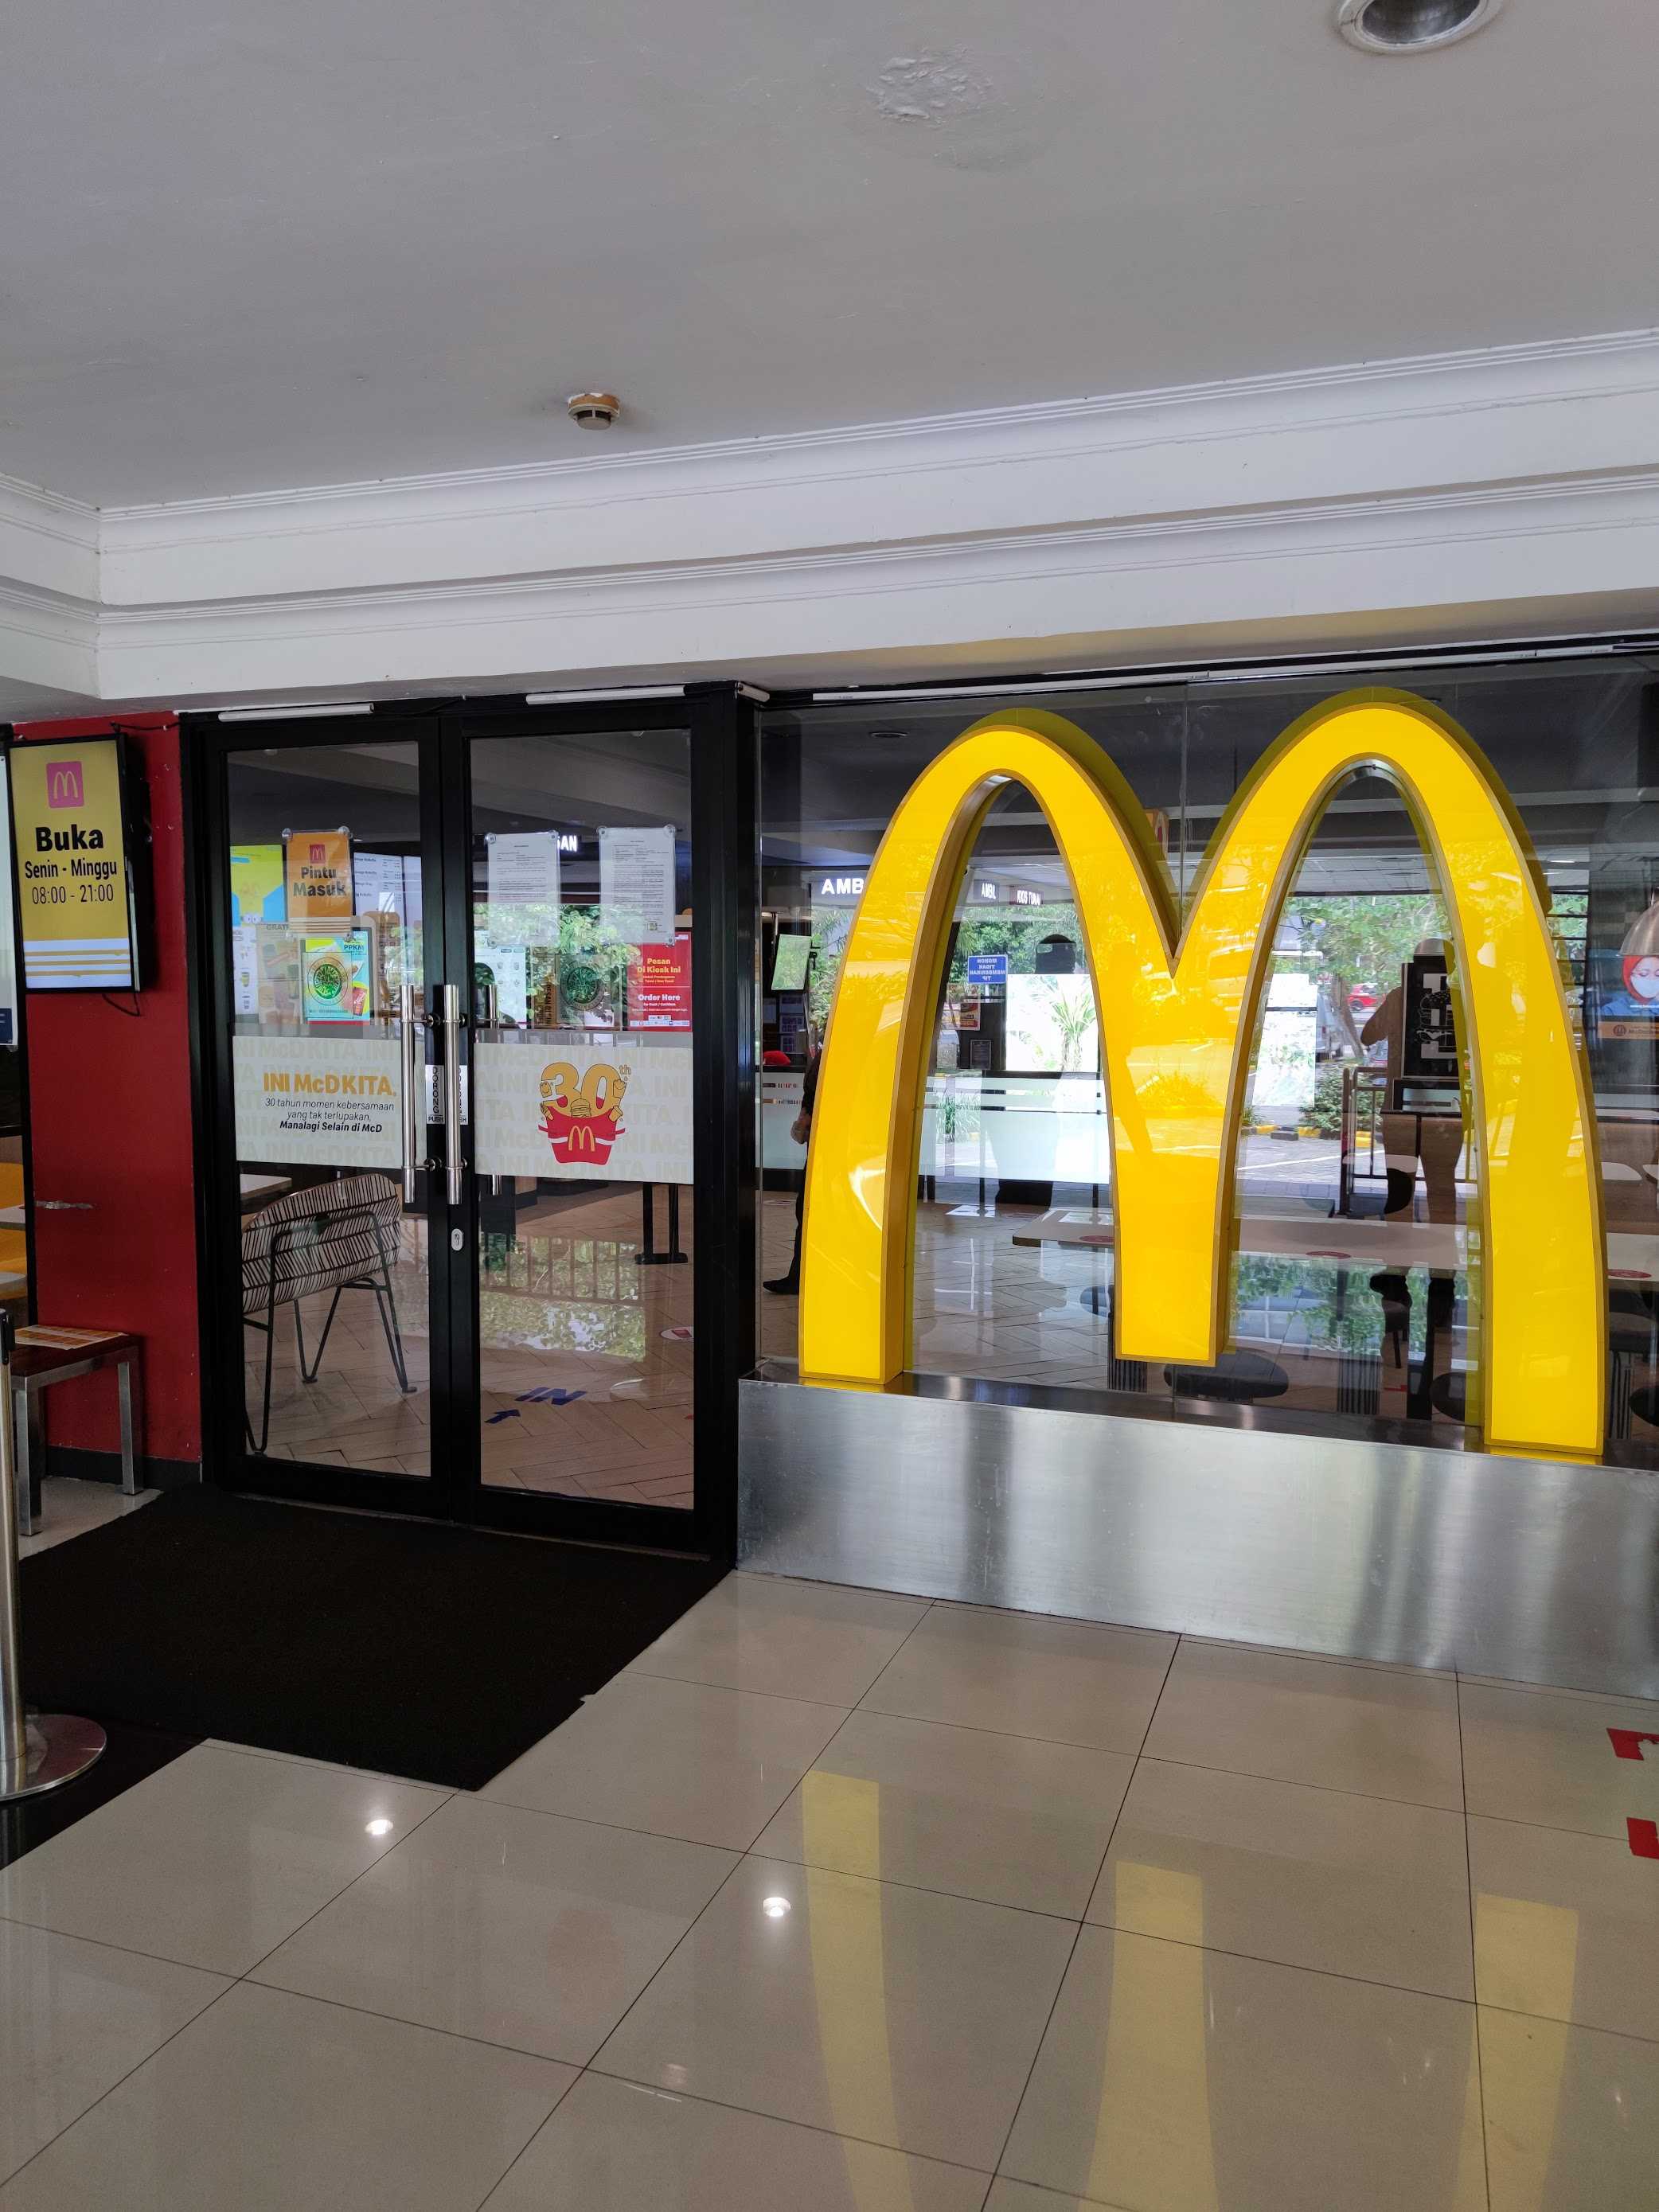 McDonald's - Pondok Indah Mall 1 1